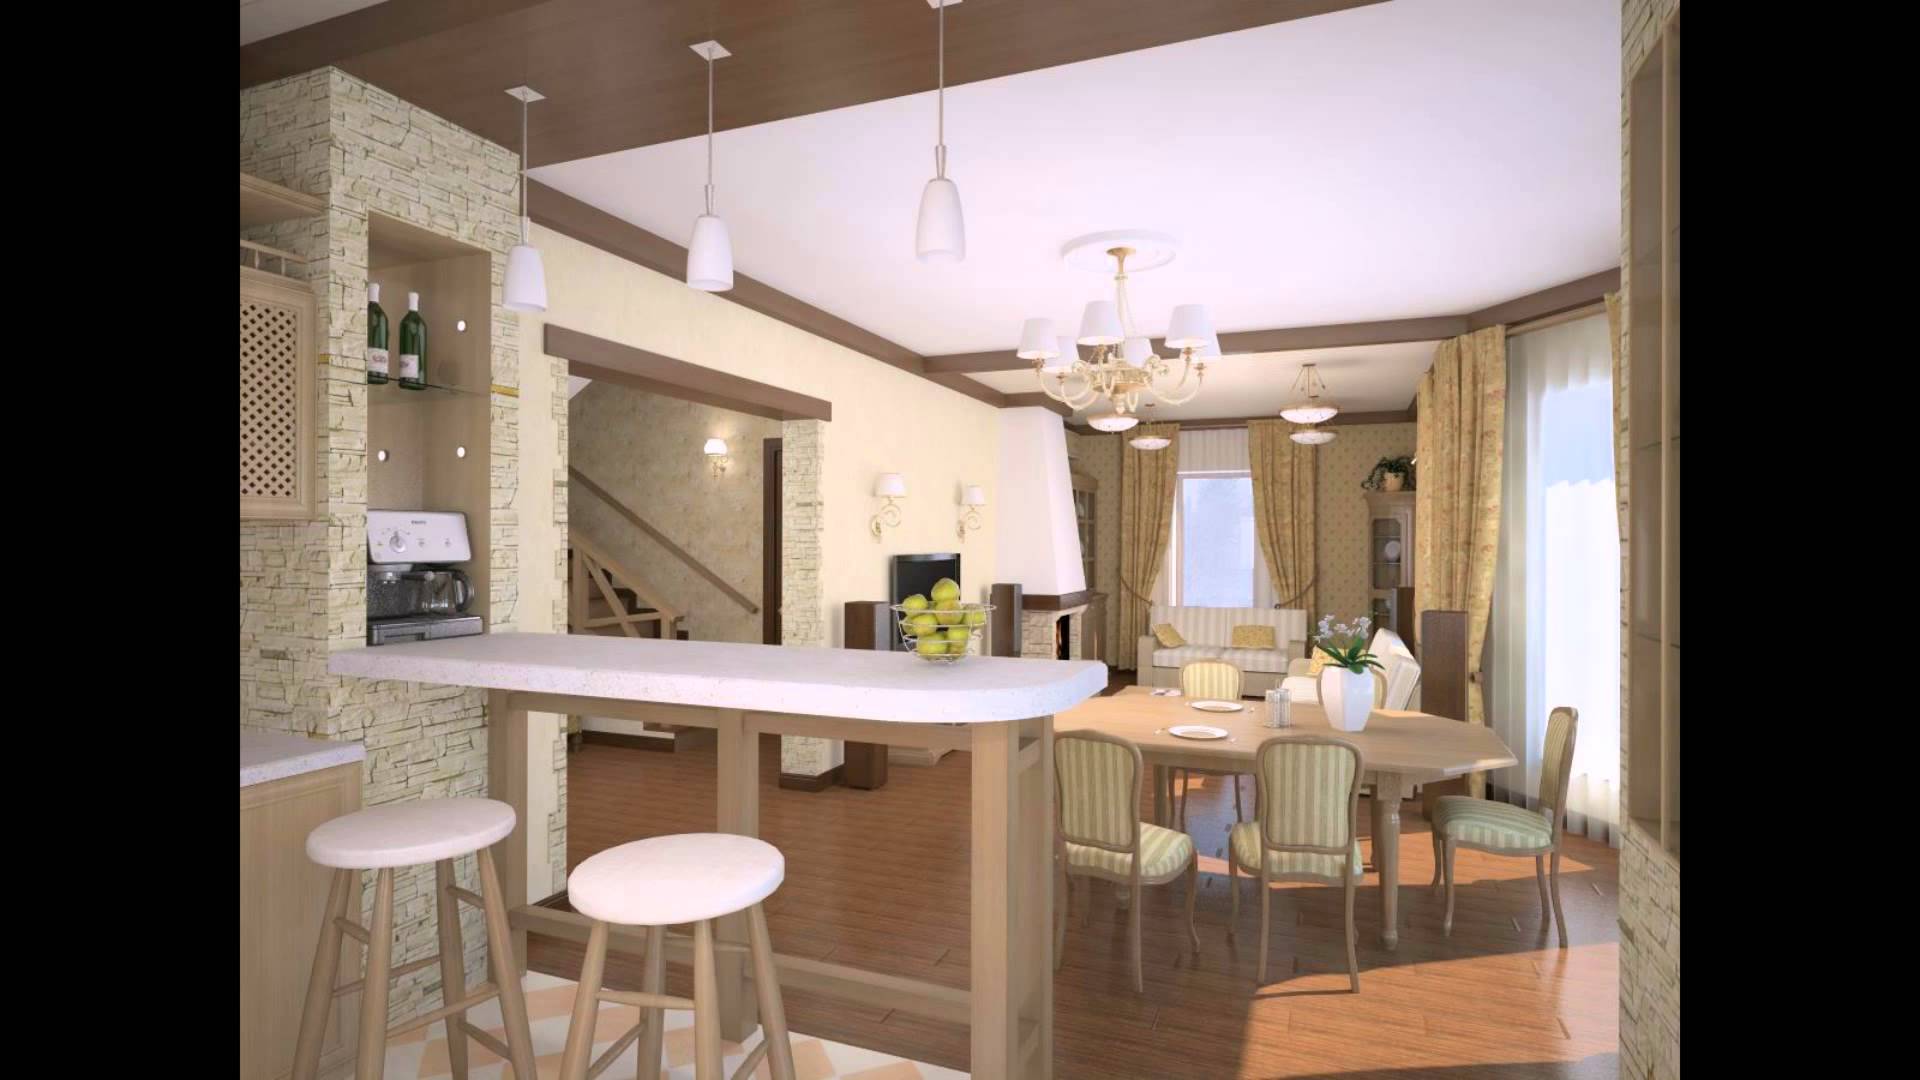 Дизайн гостиной комнаты совмещенной с кухней в частном доме